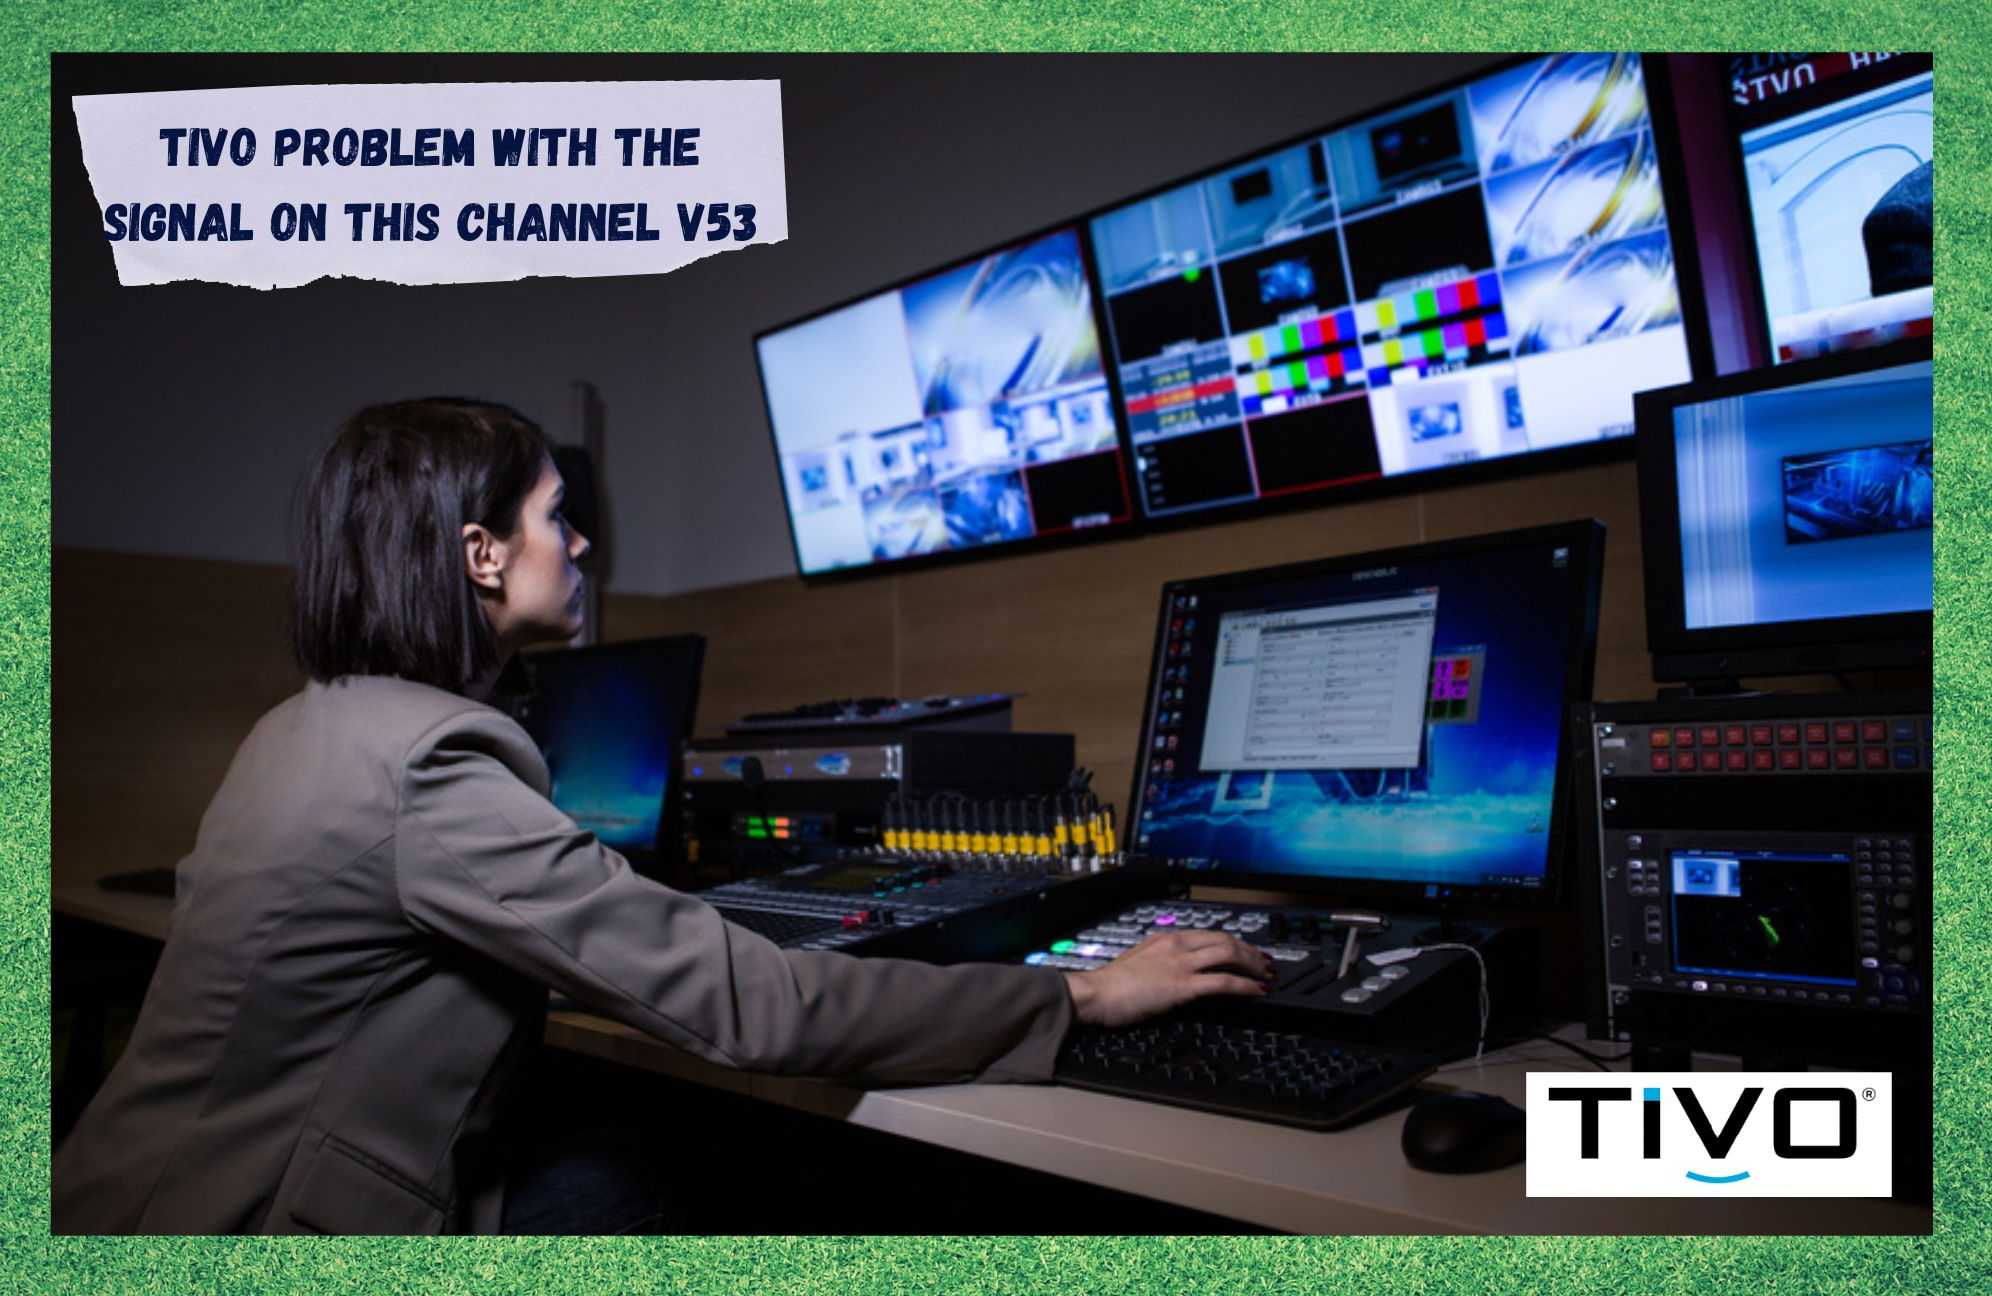 TiVo: Bu Kanal V53 Siqnalında Problem (Problemlərin aradan qaldırılması)